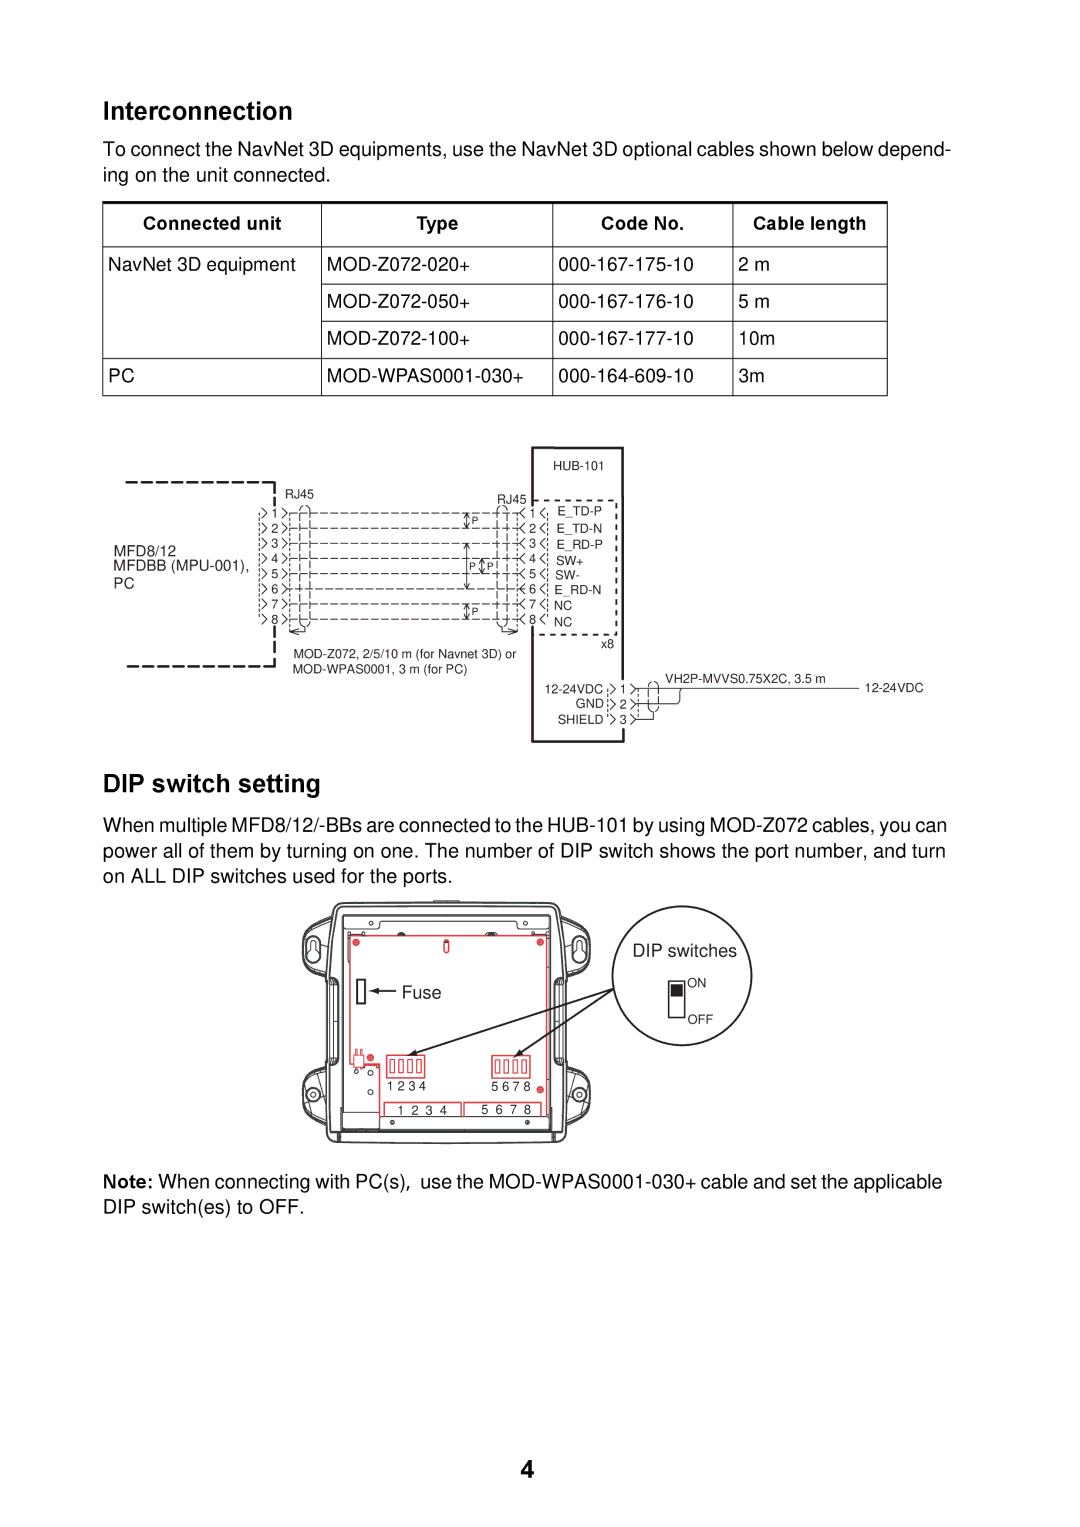 Furuno Hub-101 manual Interconnection, DIP switch setting 